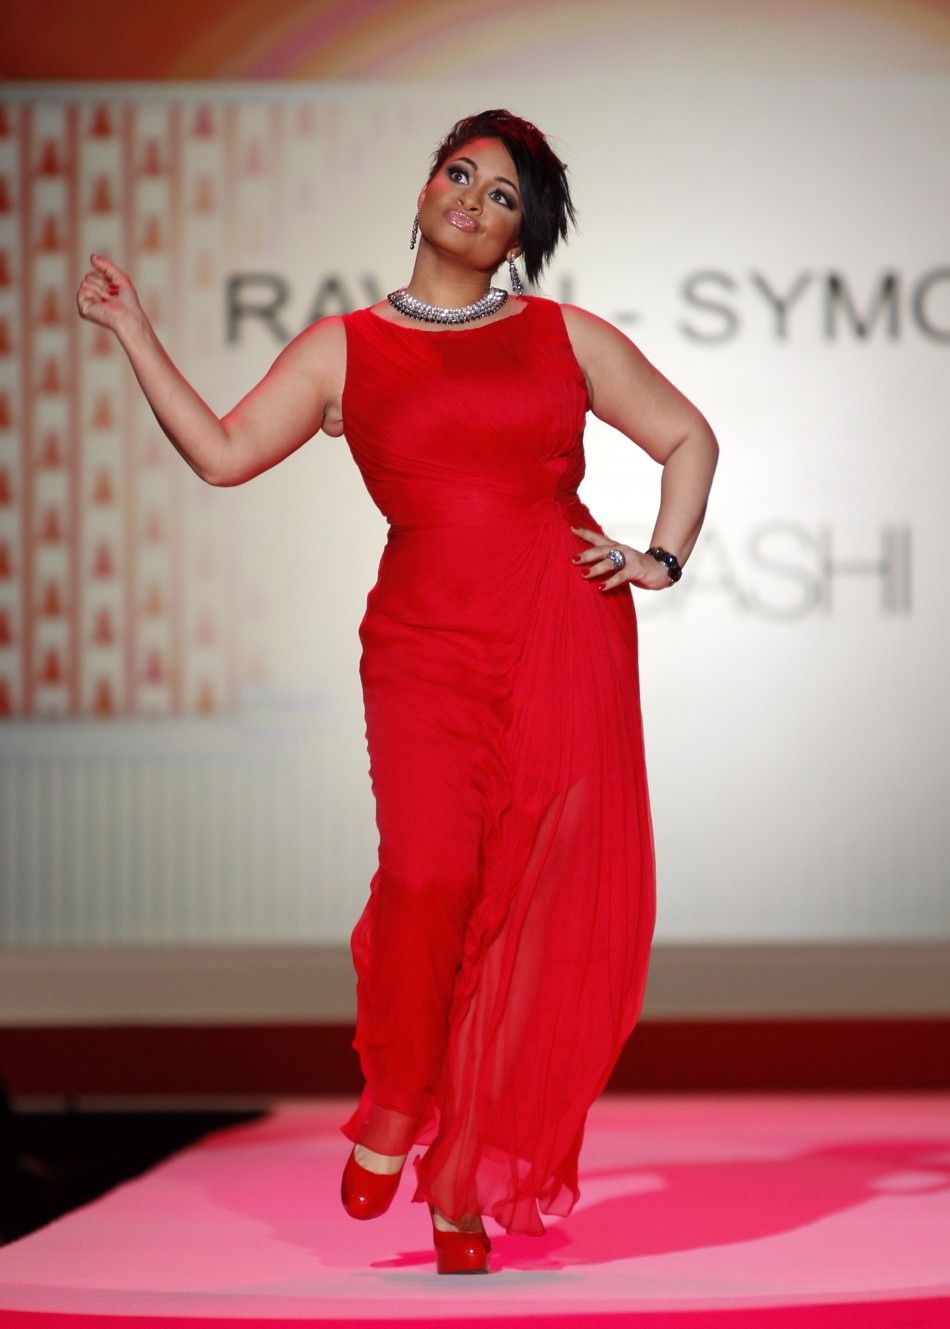 Raven Symone in 2010